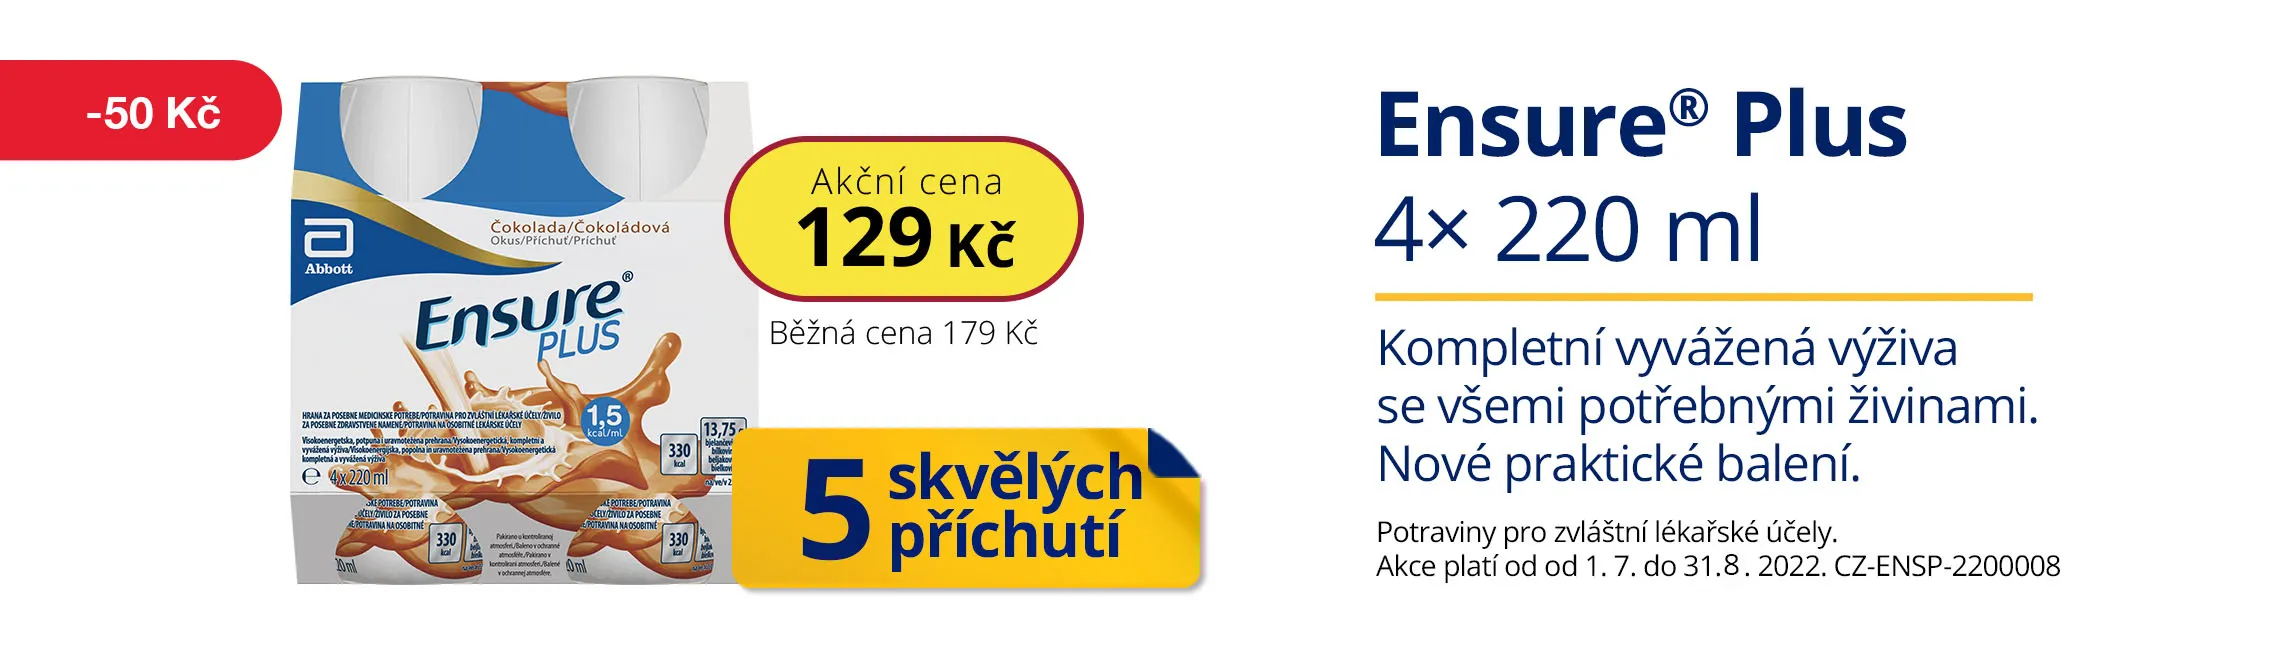 Ensure plus sleva 129 Kč (srpen 2022)